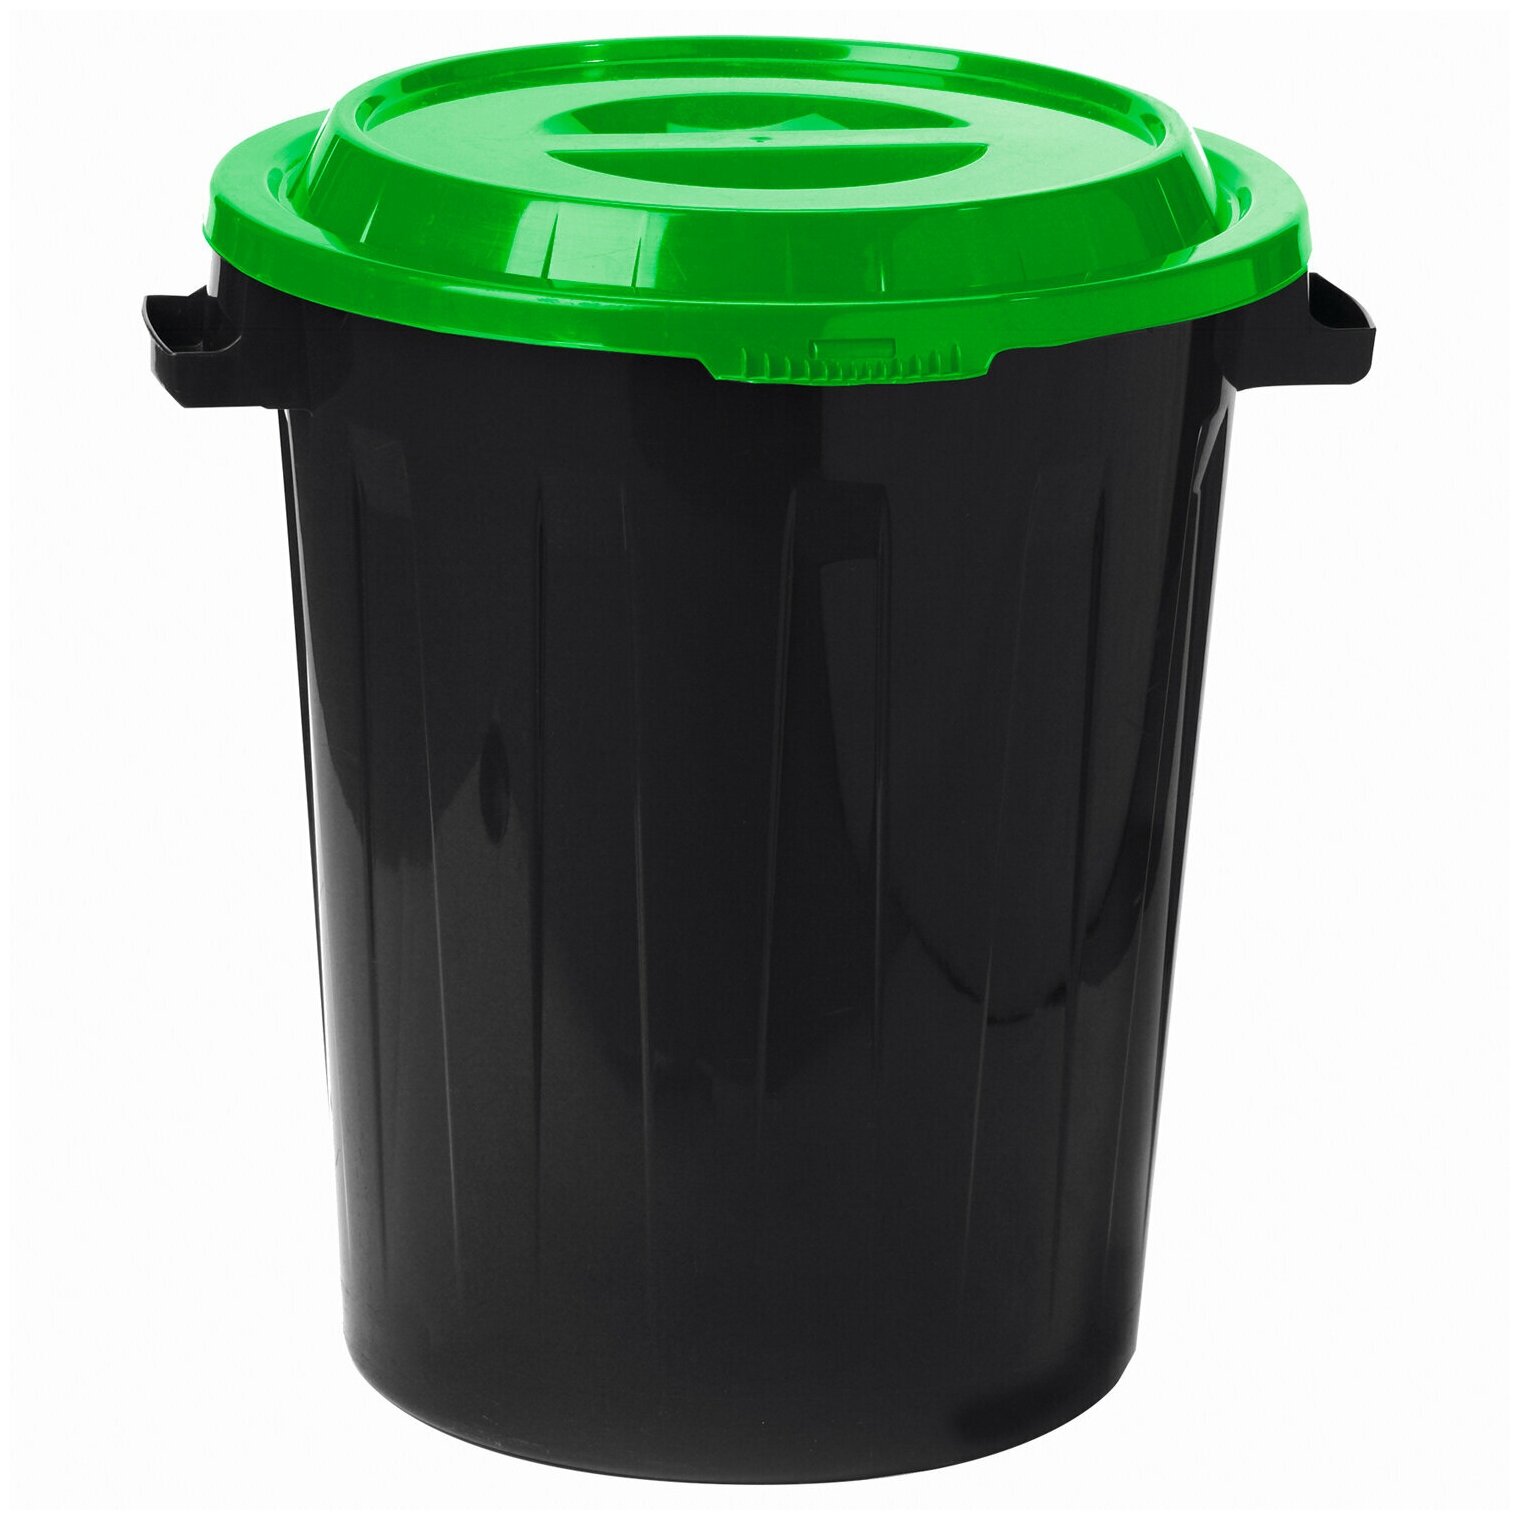 Контейнер 60 литров для мусора, БАК+крышка (высота 55 см, диаметр 48 см), ассорти, IDEA, М 2393